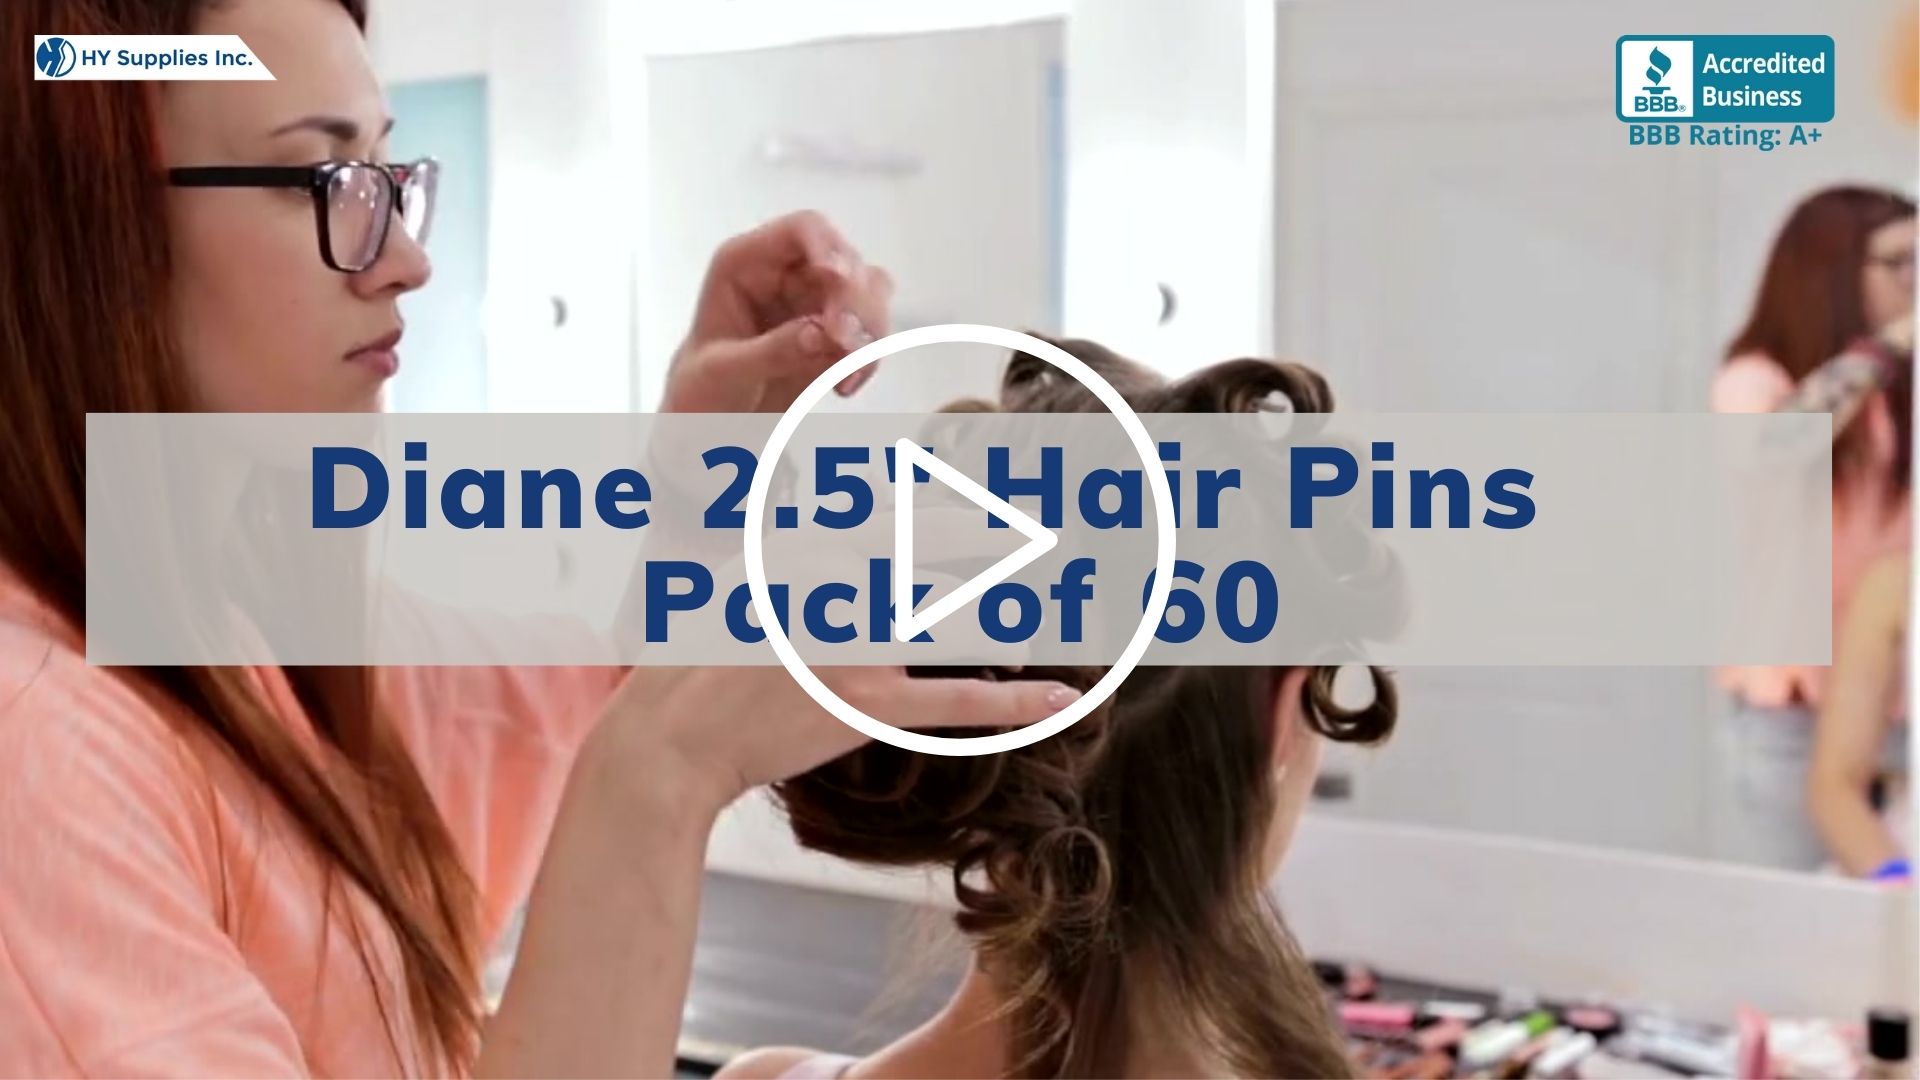 Diane 2.5"" Hair Pins - Pack of 60